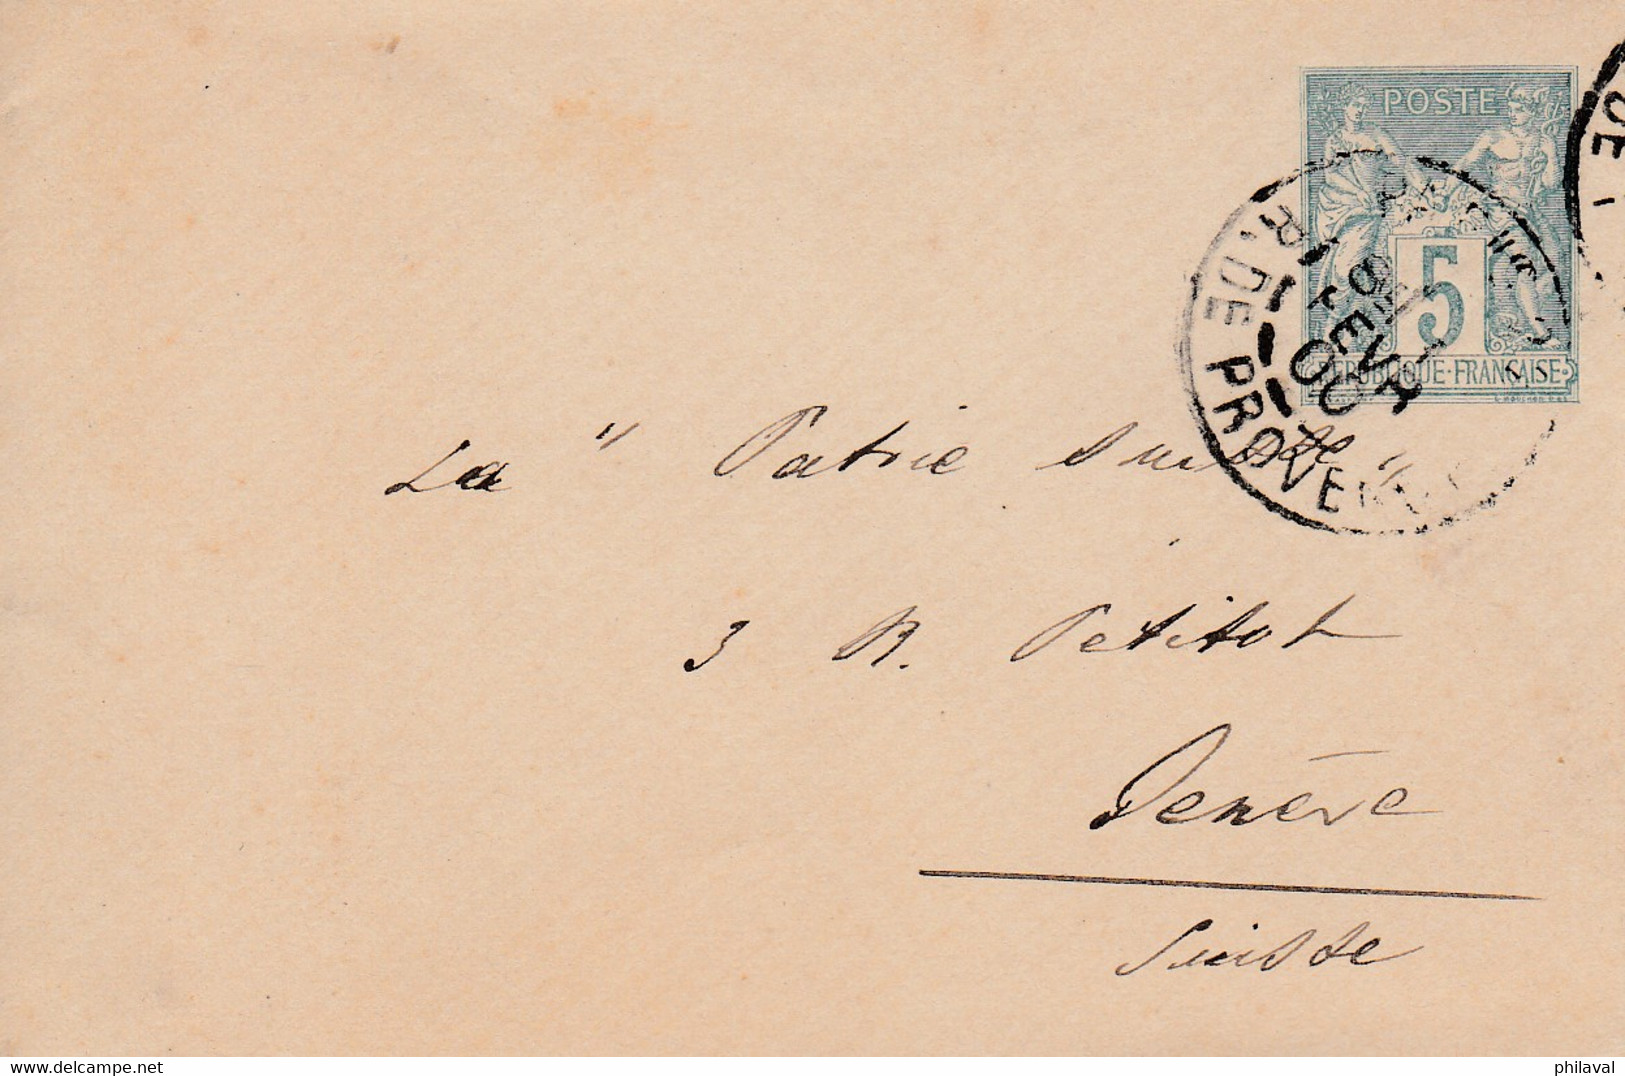 Lot de 6 lettres-entiers postaux de France